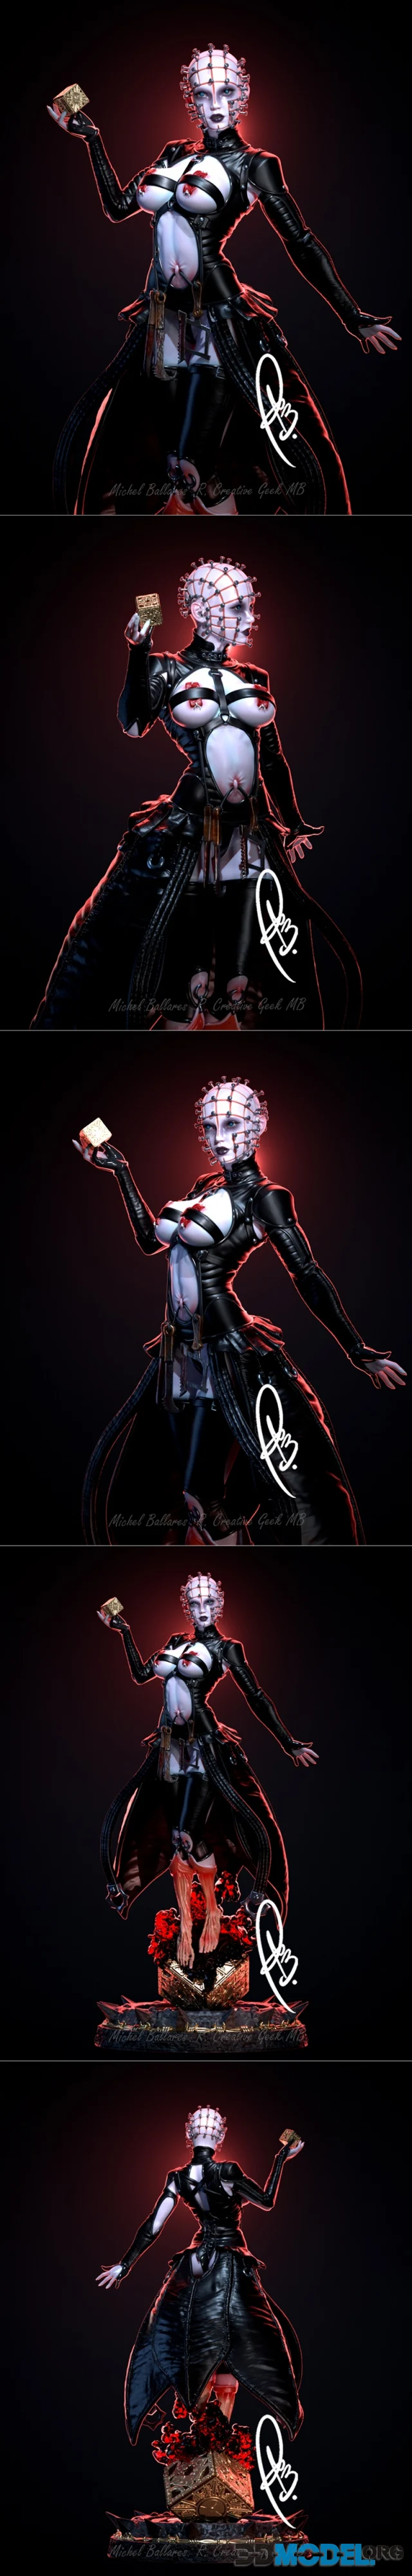 Hellraiser - Female Pinhead by Creative Geek MB